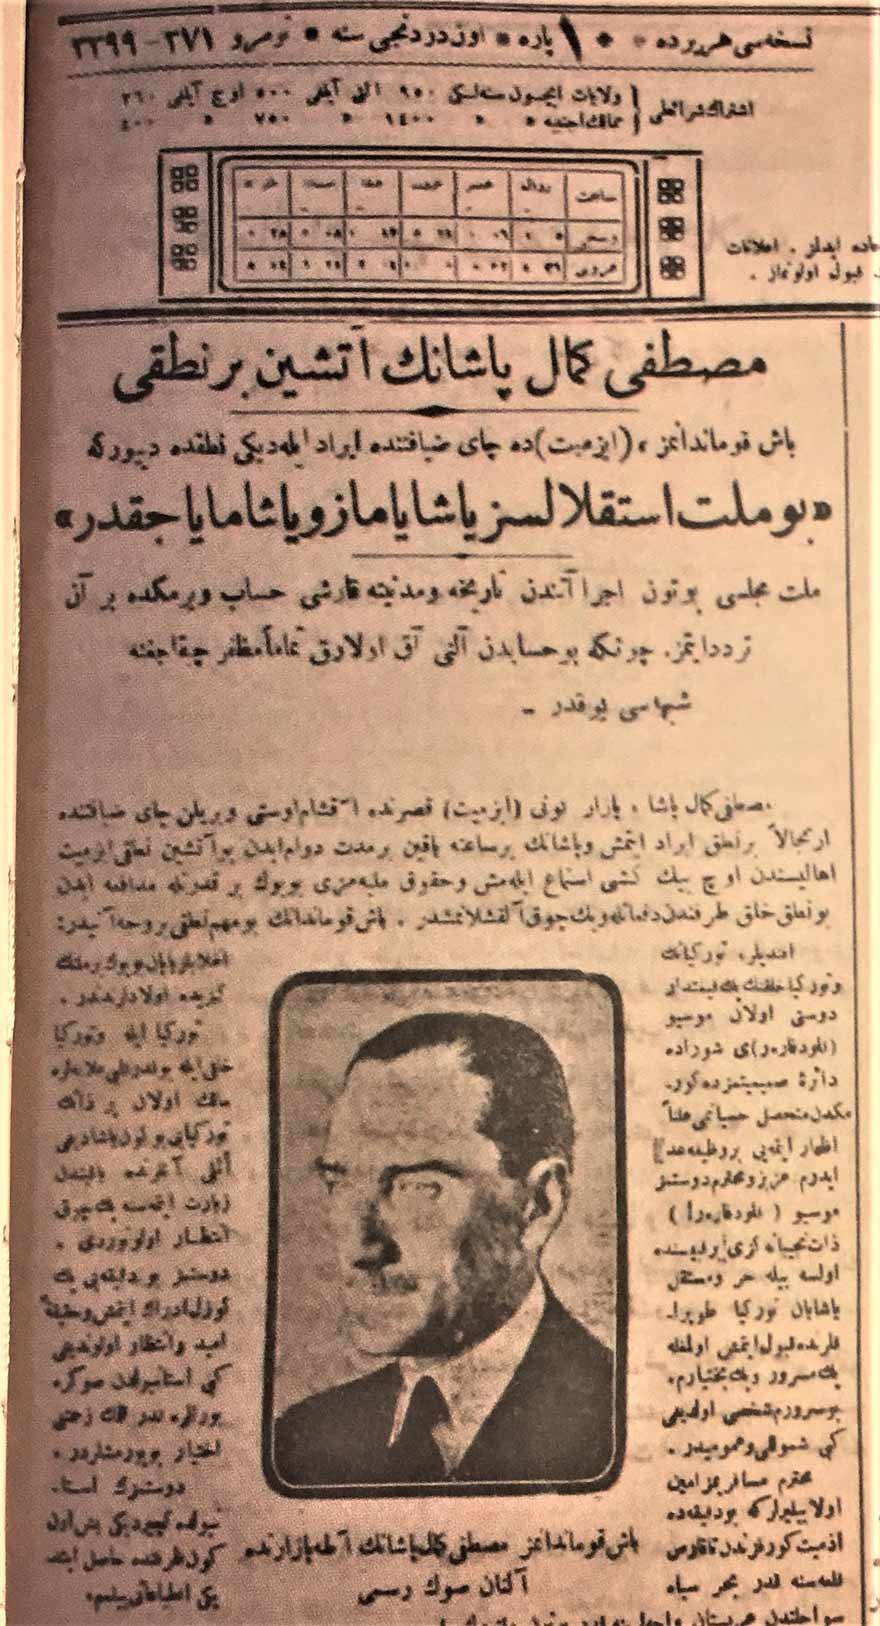 Atatürk Milli Mücadele yıllarında sıkça ‘bağımsızlıktan’ söz ediyordu. Örneğin, bu gazete haberinde Atatürk’ün bir nutkunda, “Bu millet istiklalsiz yaşayamaz ve yaşamayacaktır” dediği aktarılıyor.